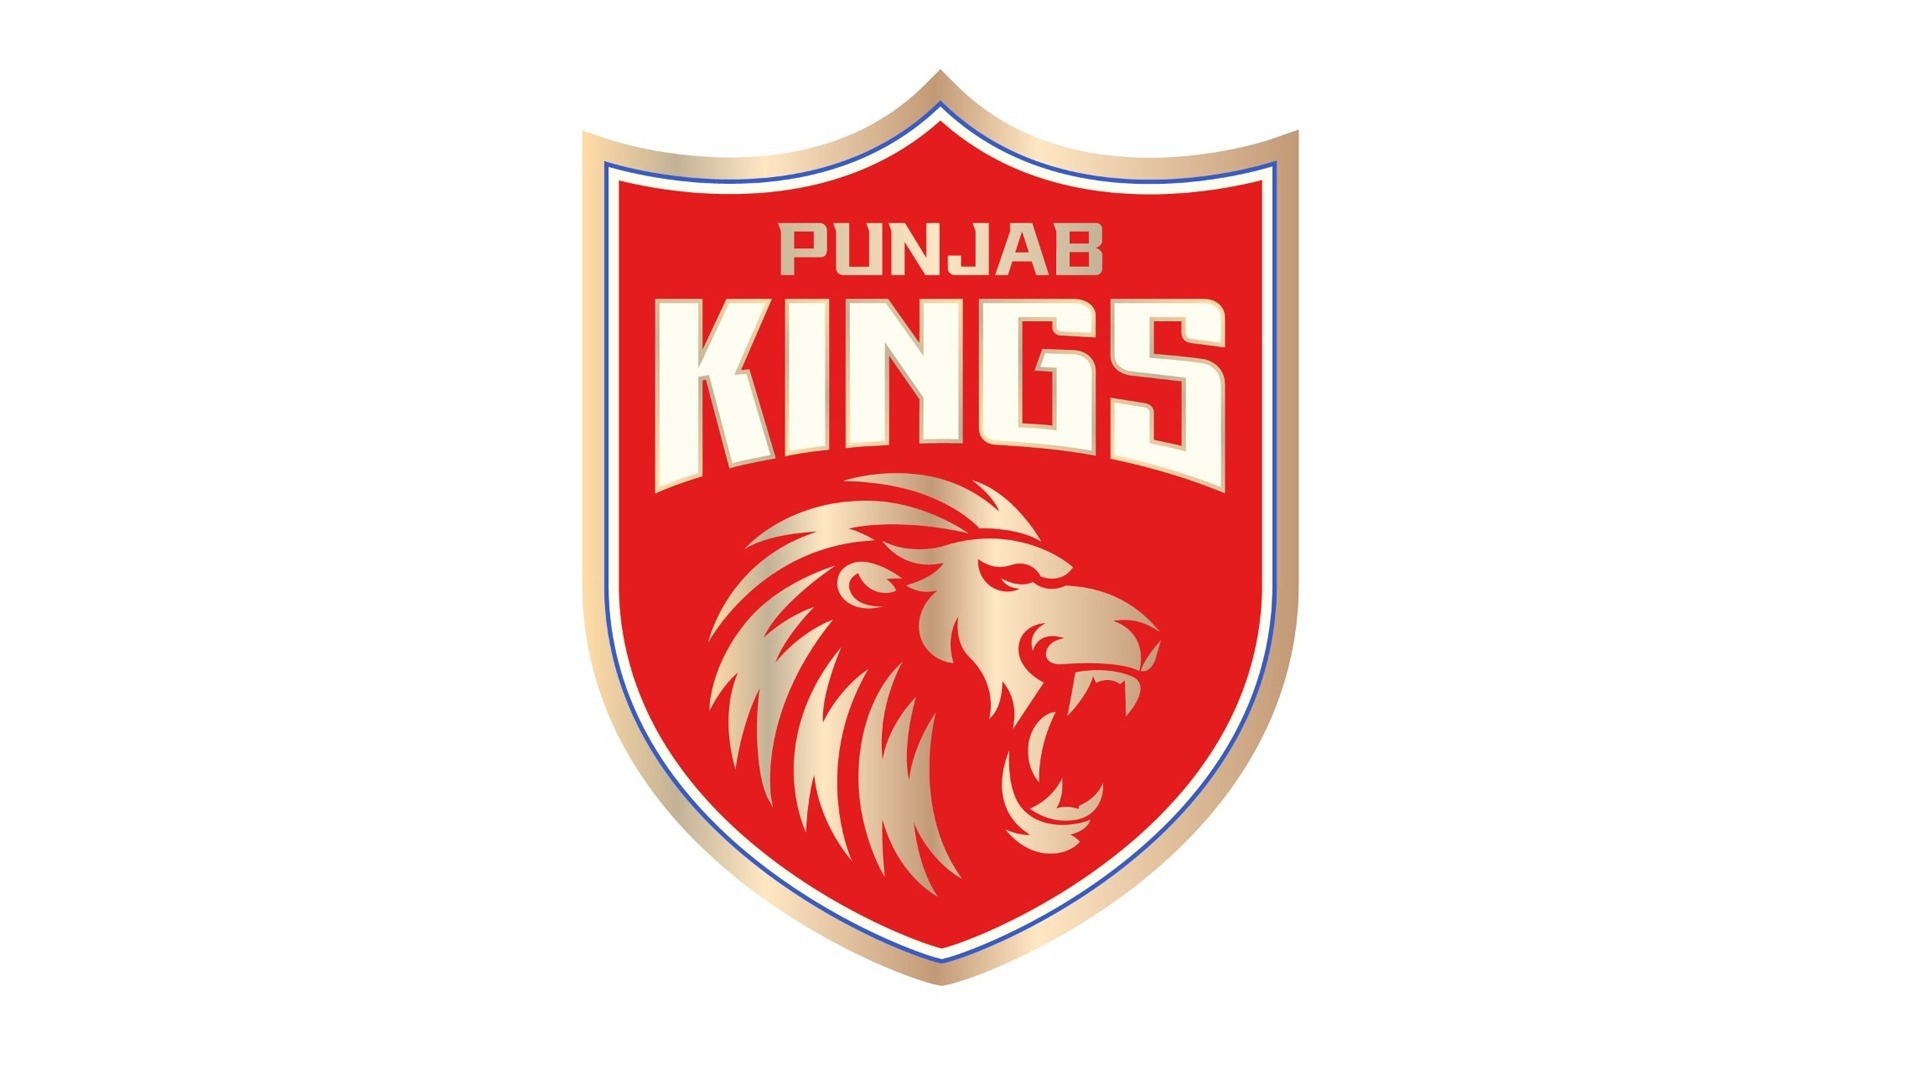 Kings Xi Punjab Is Now Biz Behind Sports